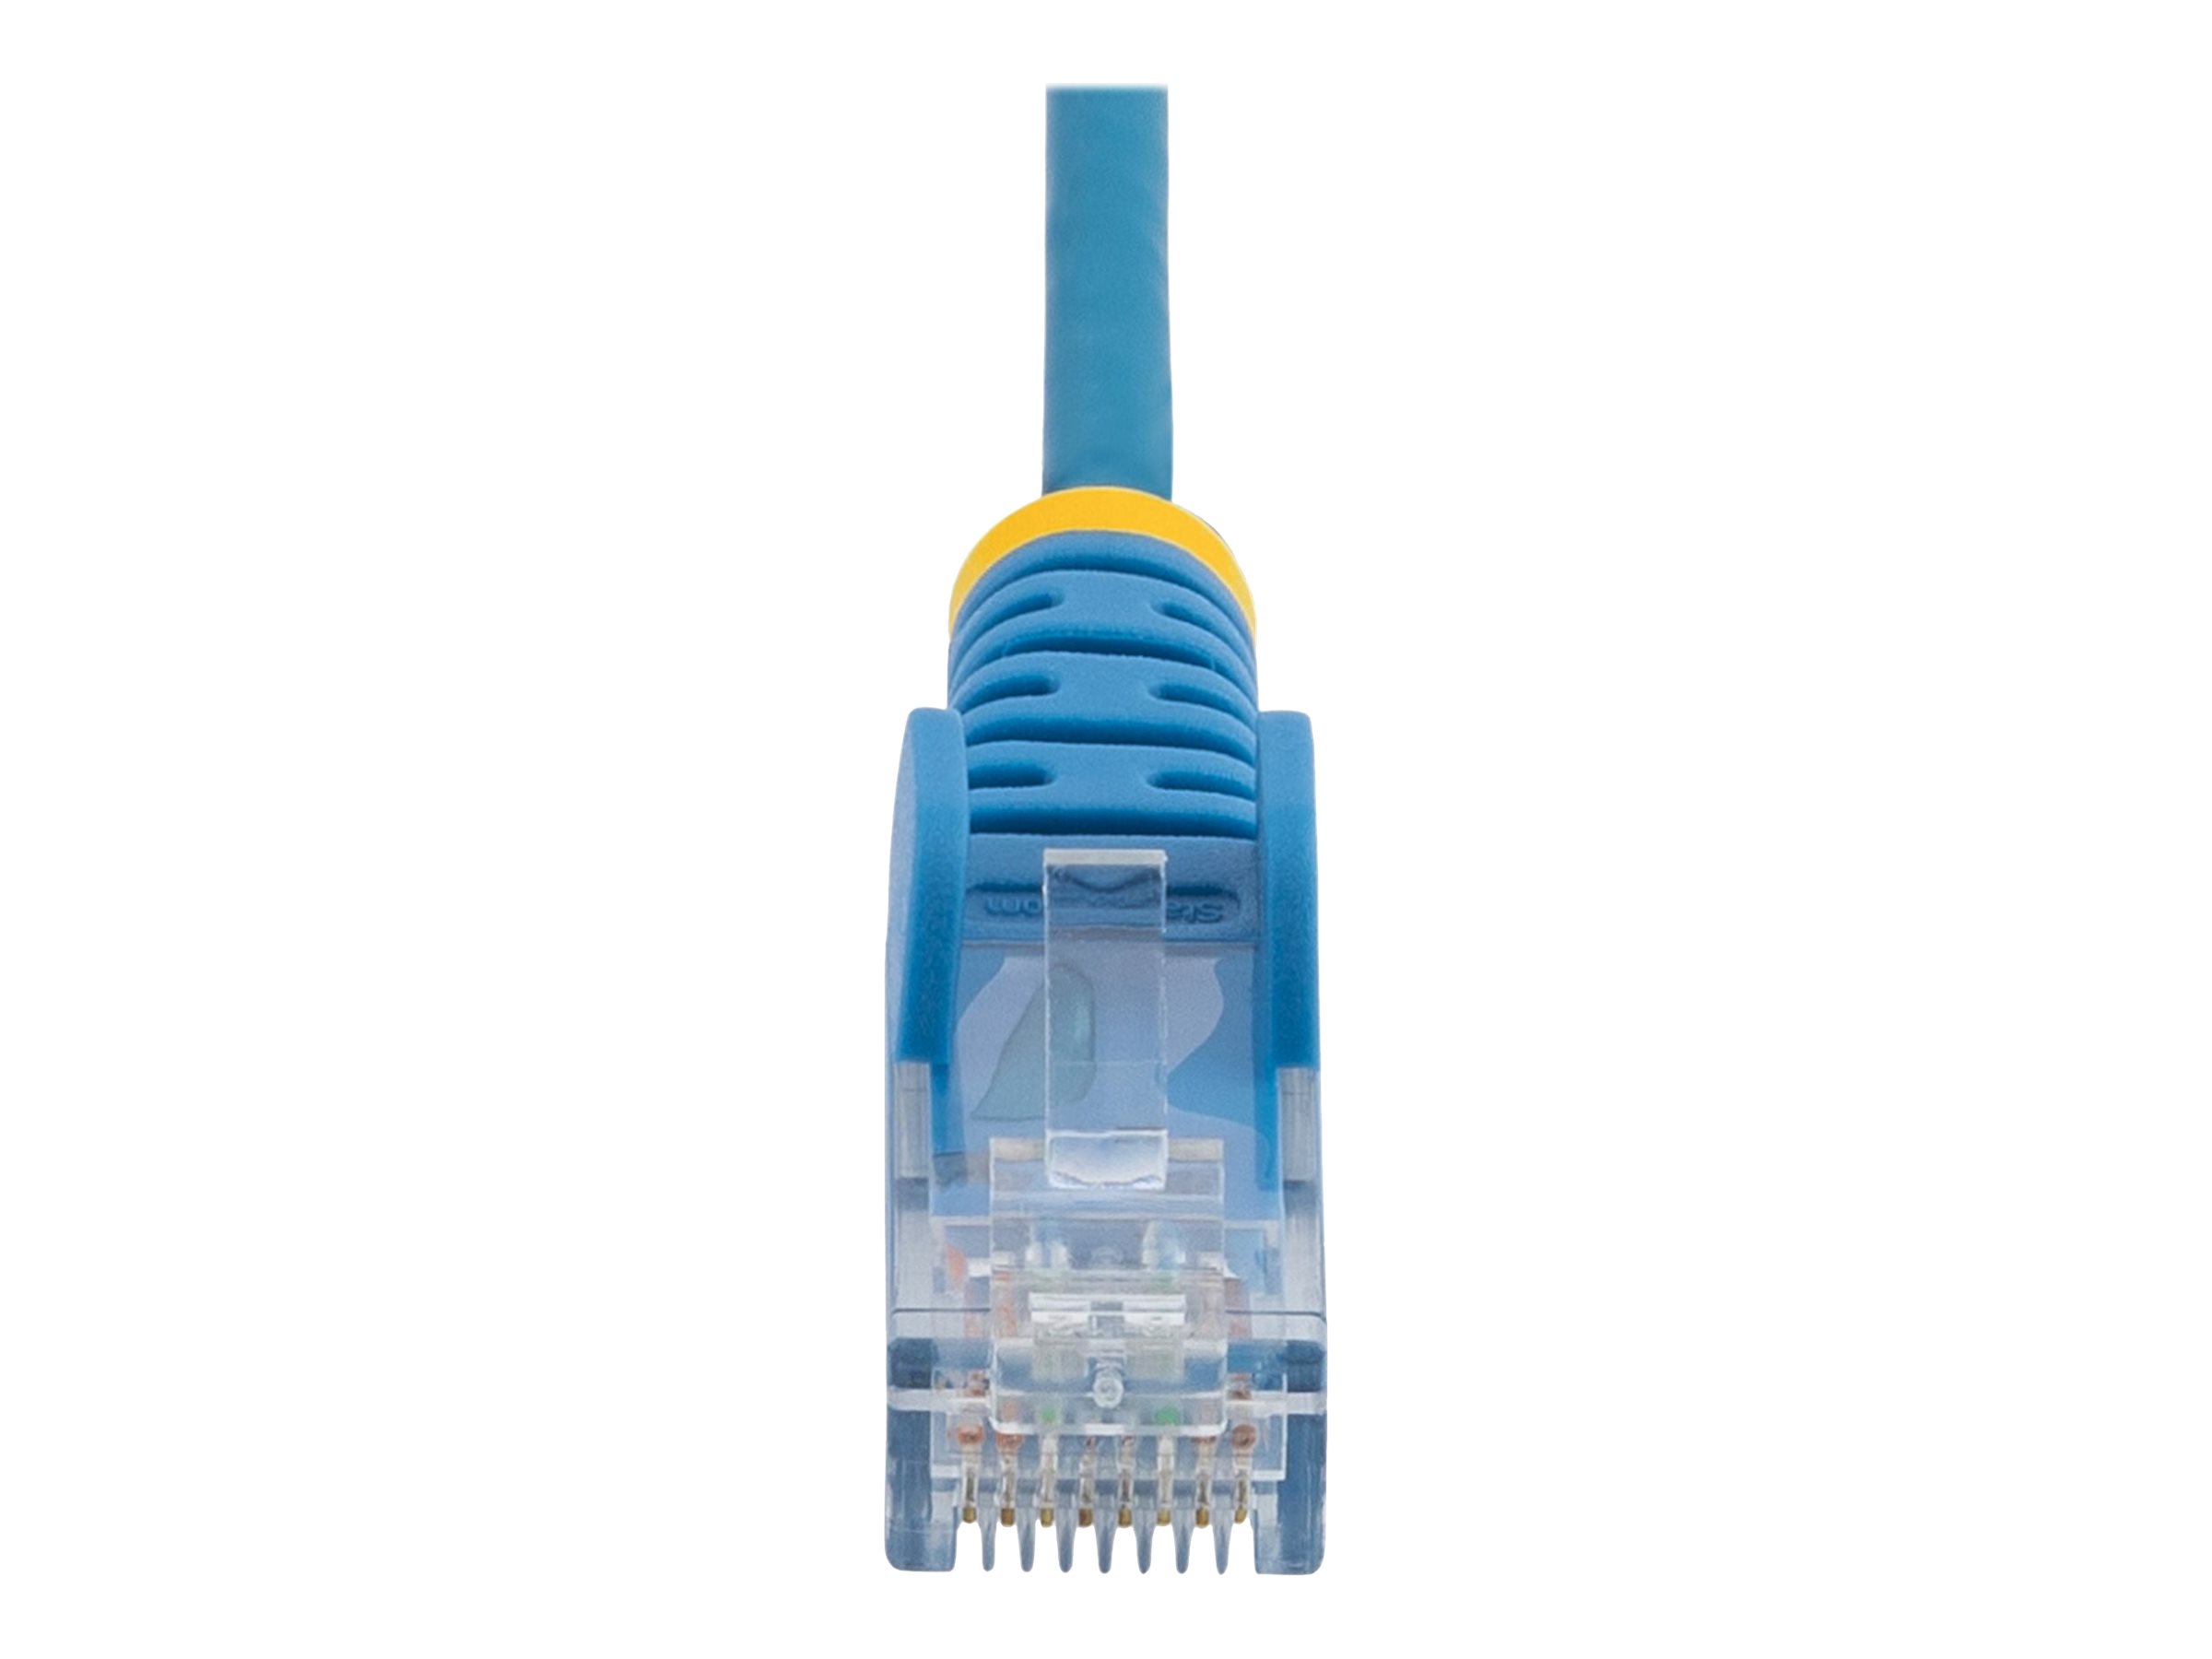 StarTech.com Cable reseau Ethernet RJ45 Cat6 de 2,5 m - Cordon de brassage mince Cat 6 UTP sans crochet - Fil Gigabit bleu (N6PAT250CMBLS) - Cordon de raccordement - RJ-45 (M) pour RJ-45 (M) - 2.5 m - CAT 6 - sans crochet - bleu - N6PAT250CMBLS - Câbles à paire torsadée